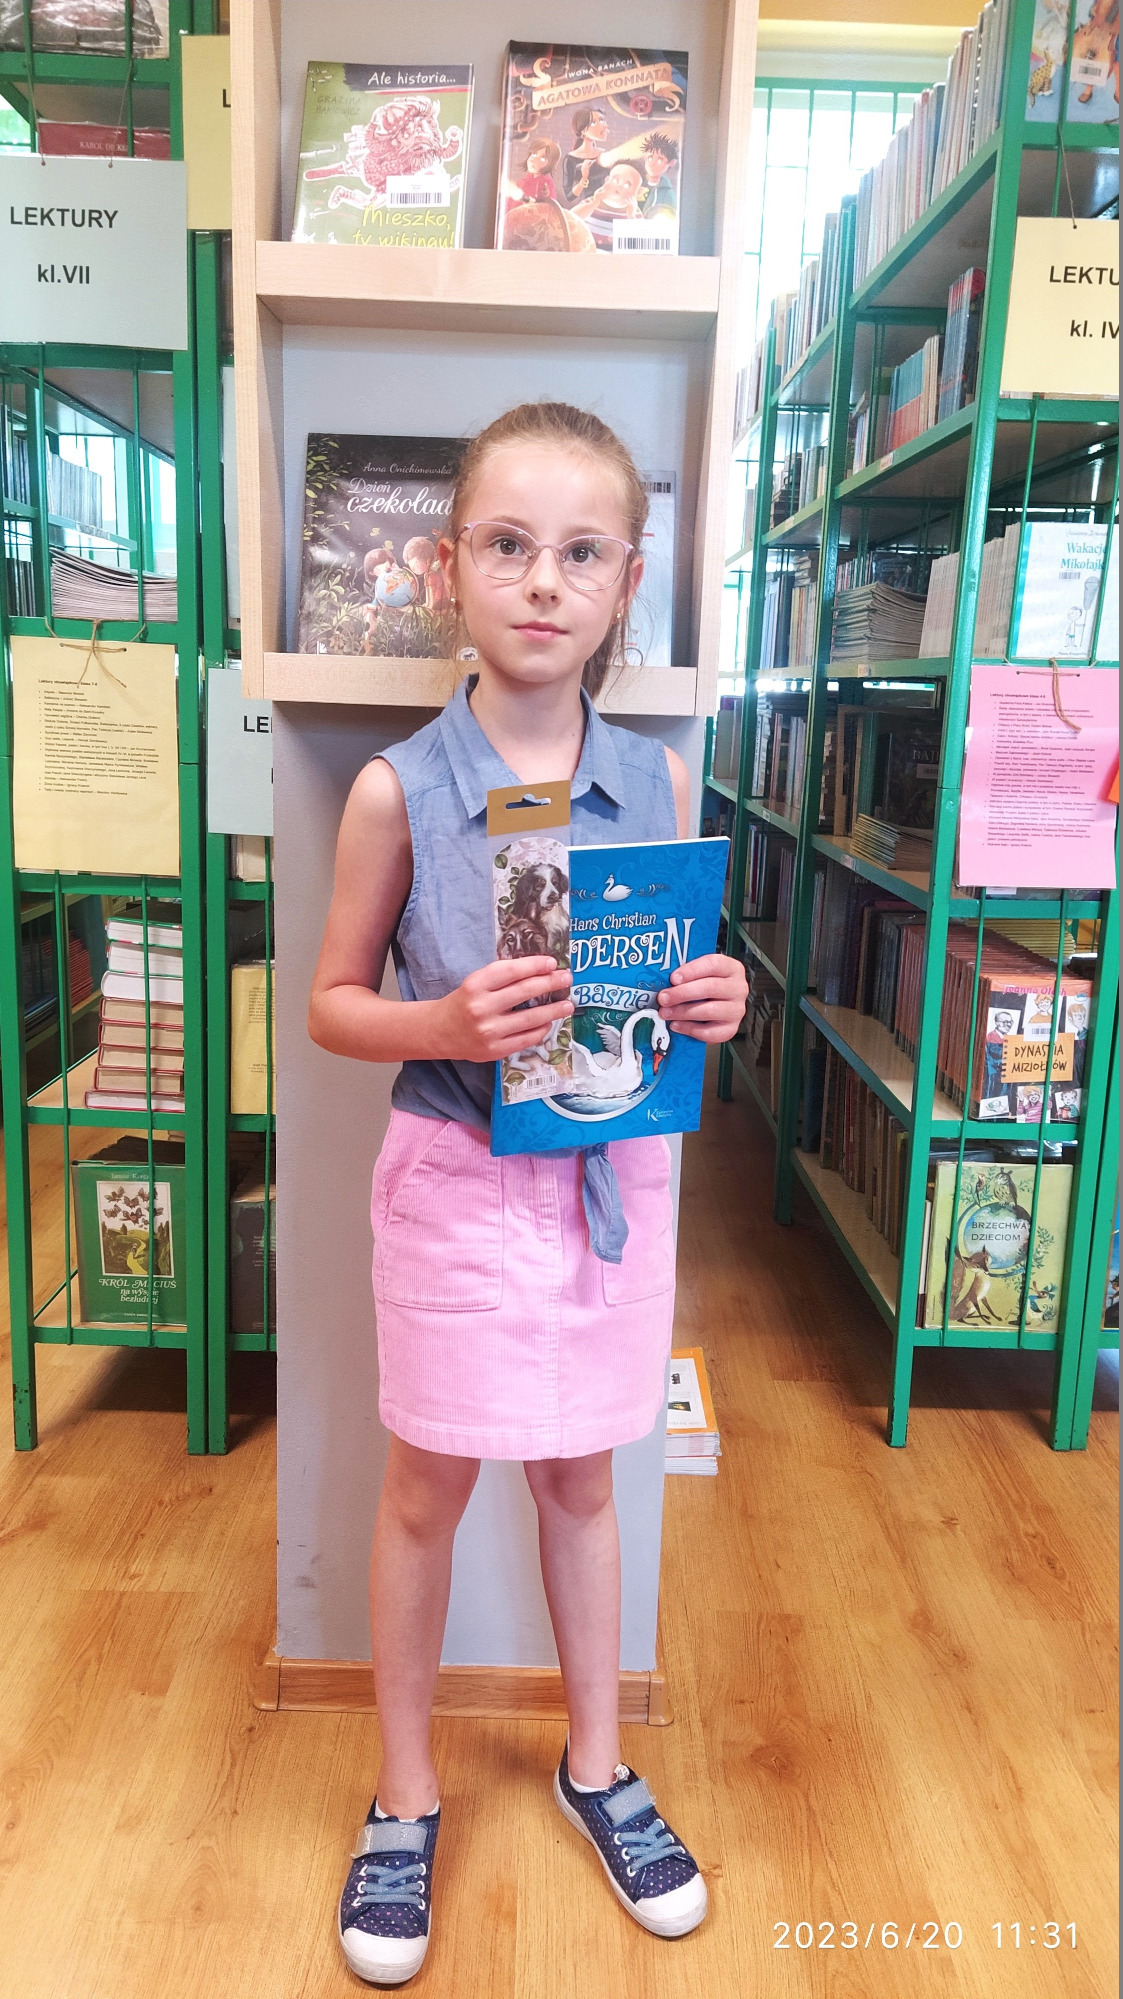 Dziewczynka stoi w bibliotece przy regałach z książkami. W ręce prezentuje nagrodę książkową, którą otrzymała za czytelnictwo.